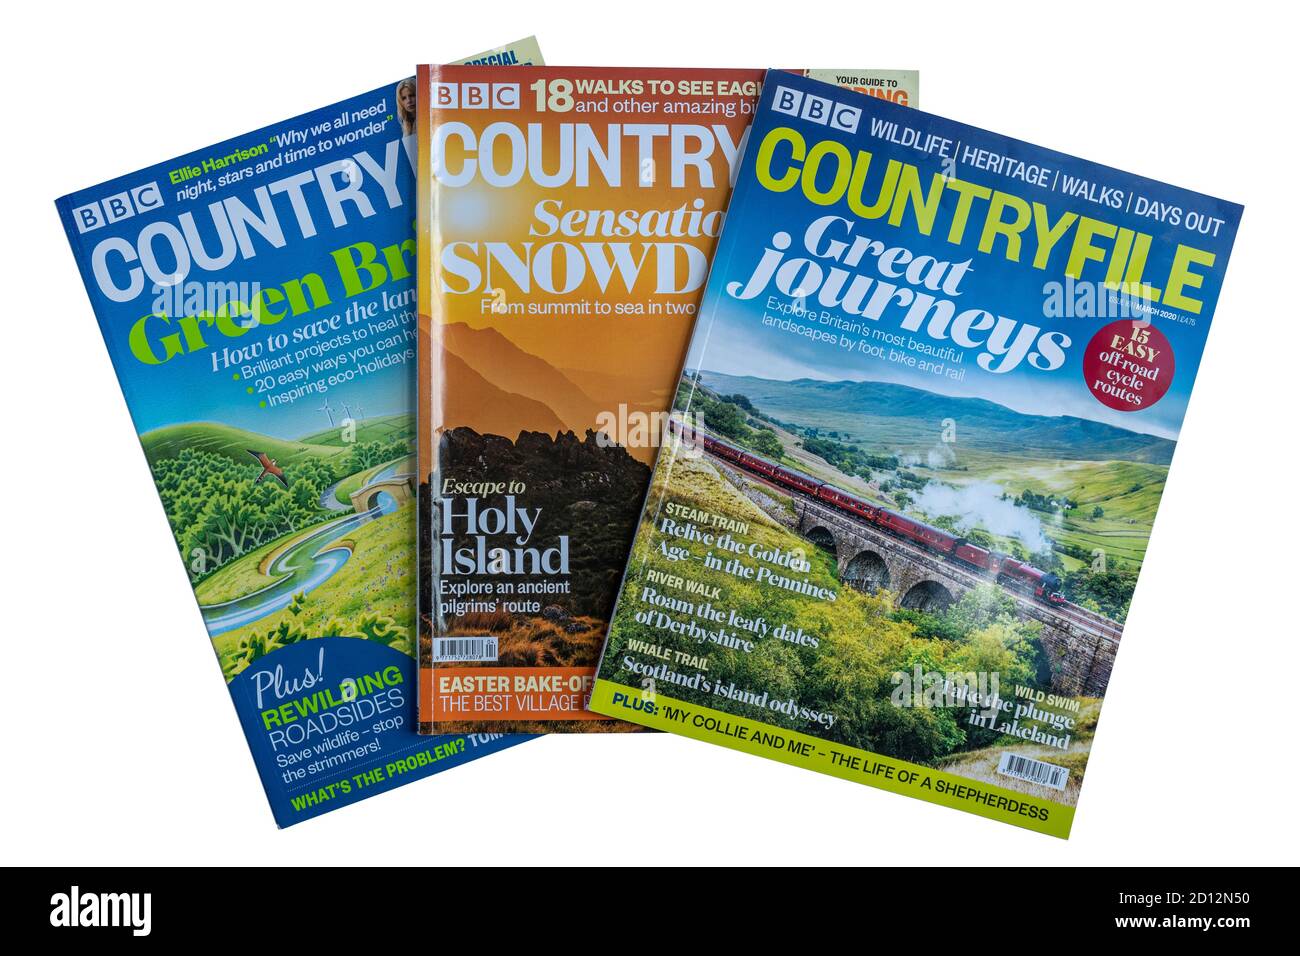 BBC Countryfile Zeitschriften auf weißem Hintergrund, Großbritannien Publikationen Stockfoto